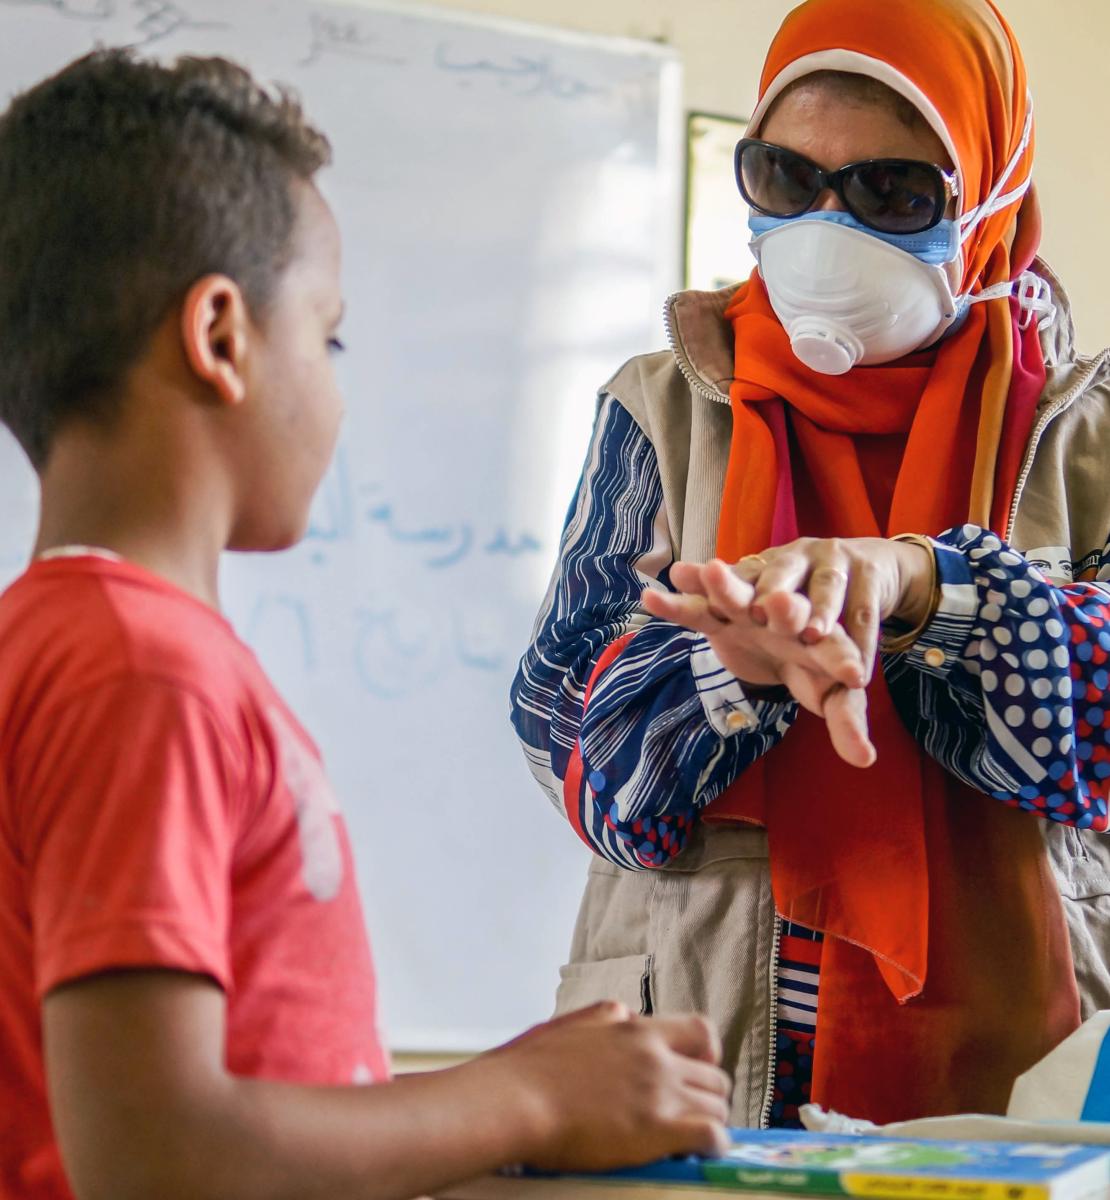 Un membre féminin du personnel de l'ONU portant un masque de protection donne à un jeune garçon des conseils de sécurité en lui montrant les gestes appropriés à faire pour un lavage efficace des mains.